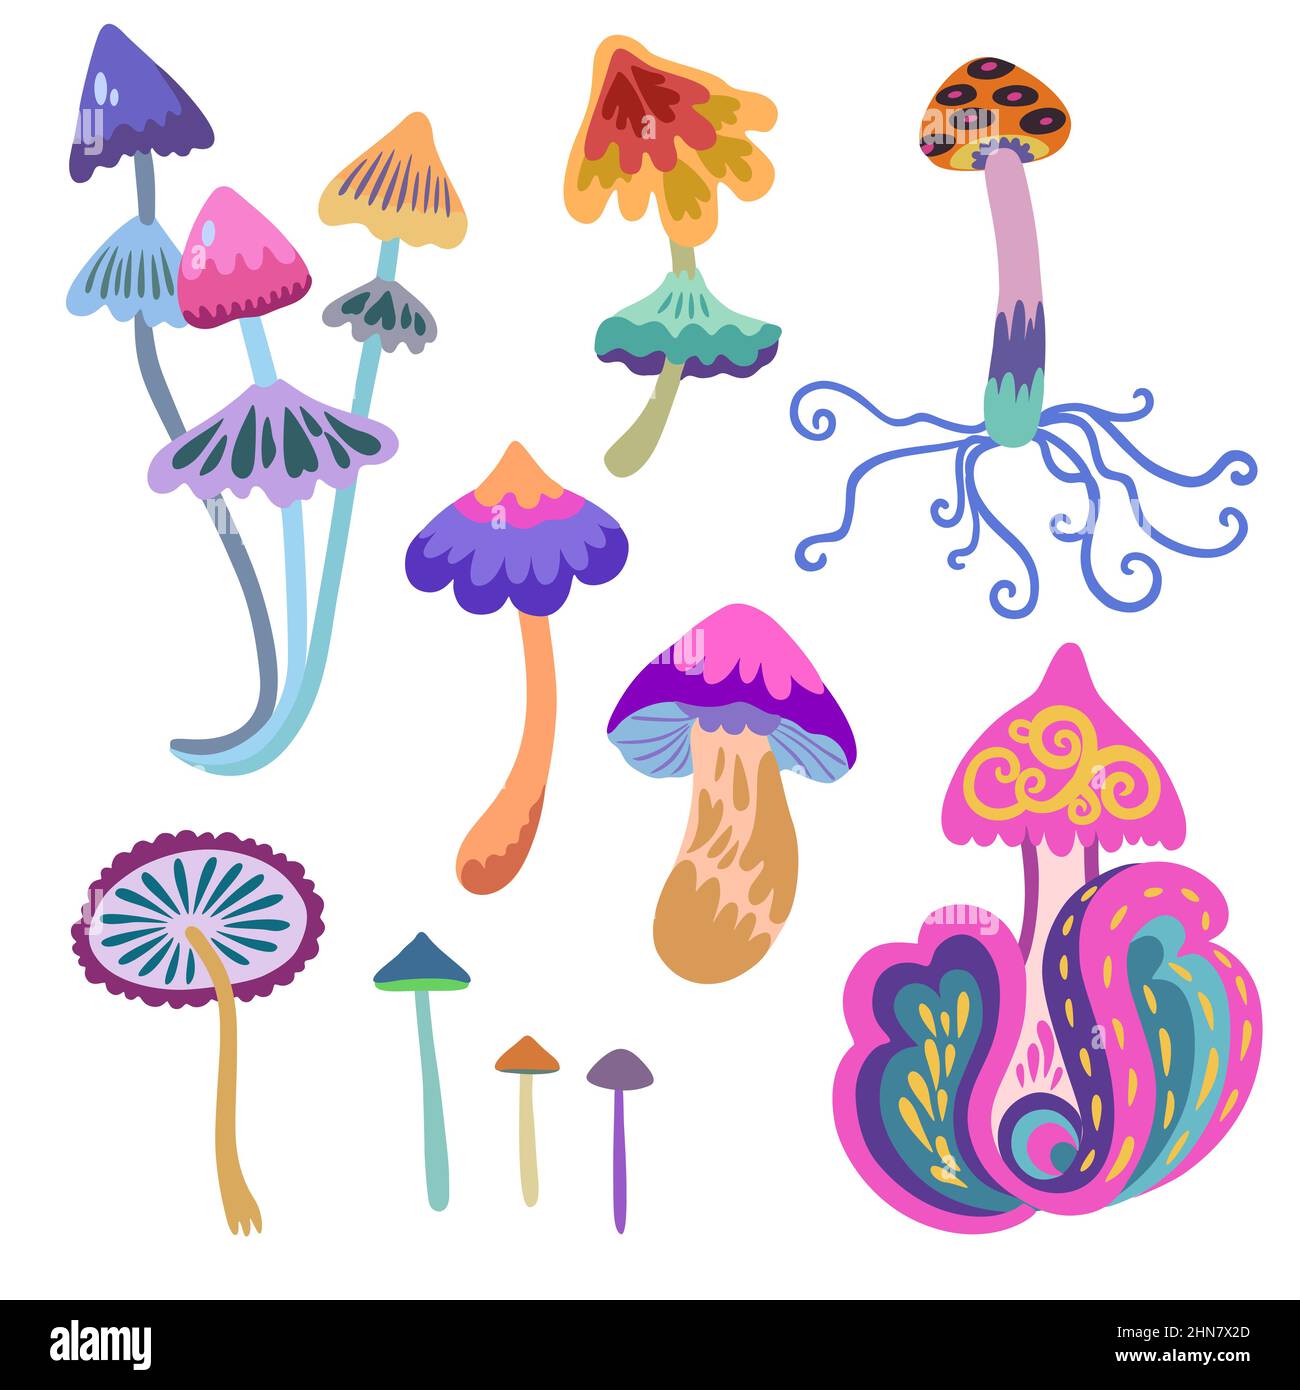 Set von psychedelisch und märchenhaften bunten Pilzen auf weißem Hintergrund isoliert. Vektorgrafik handgezeichnete Illustration. Stock Vektor